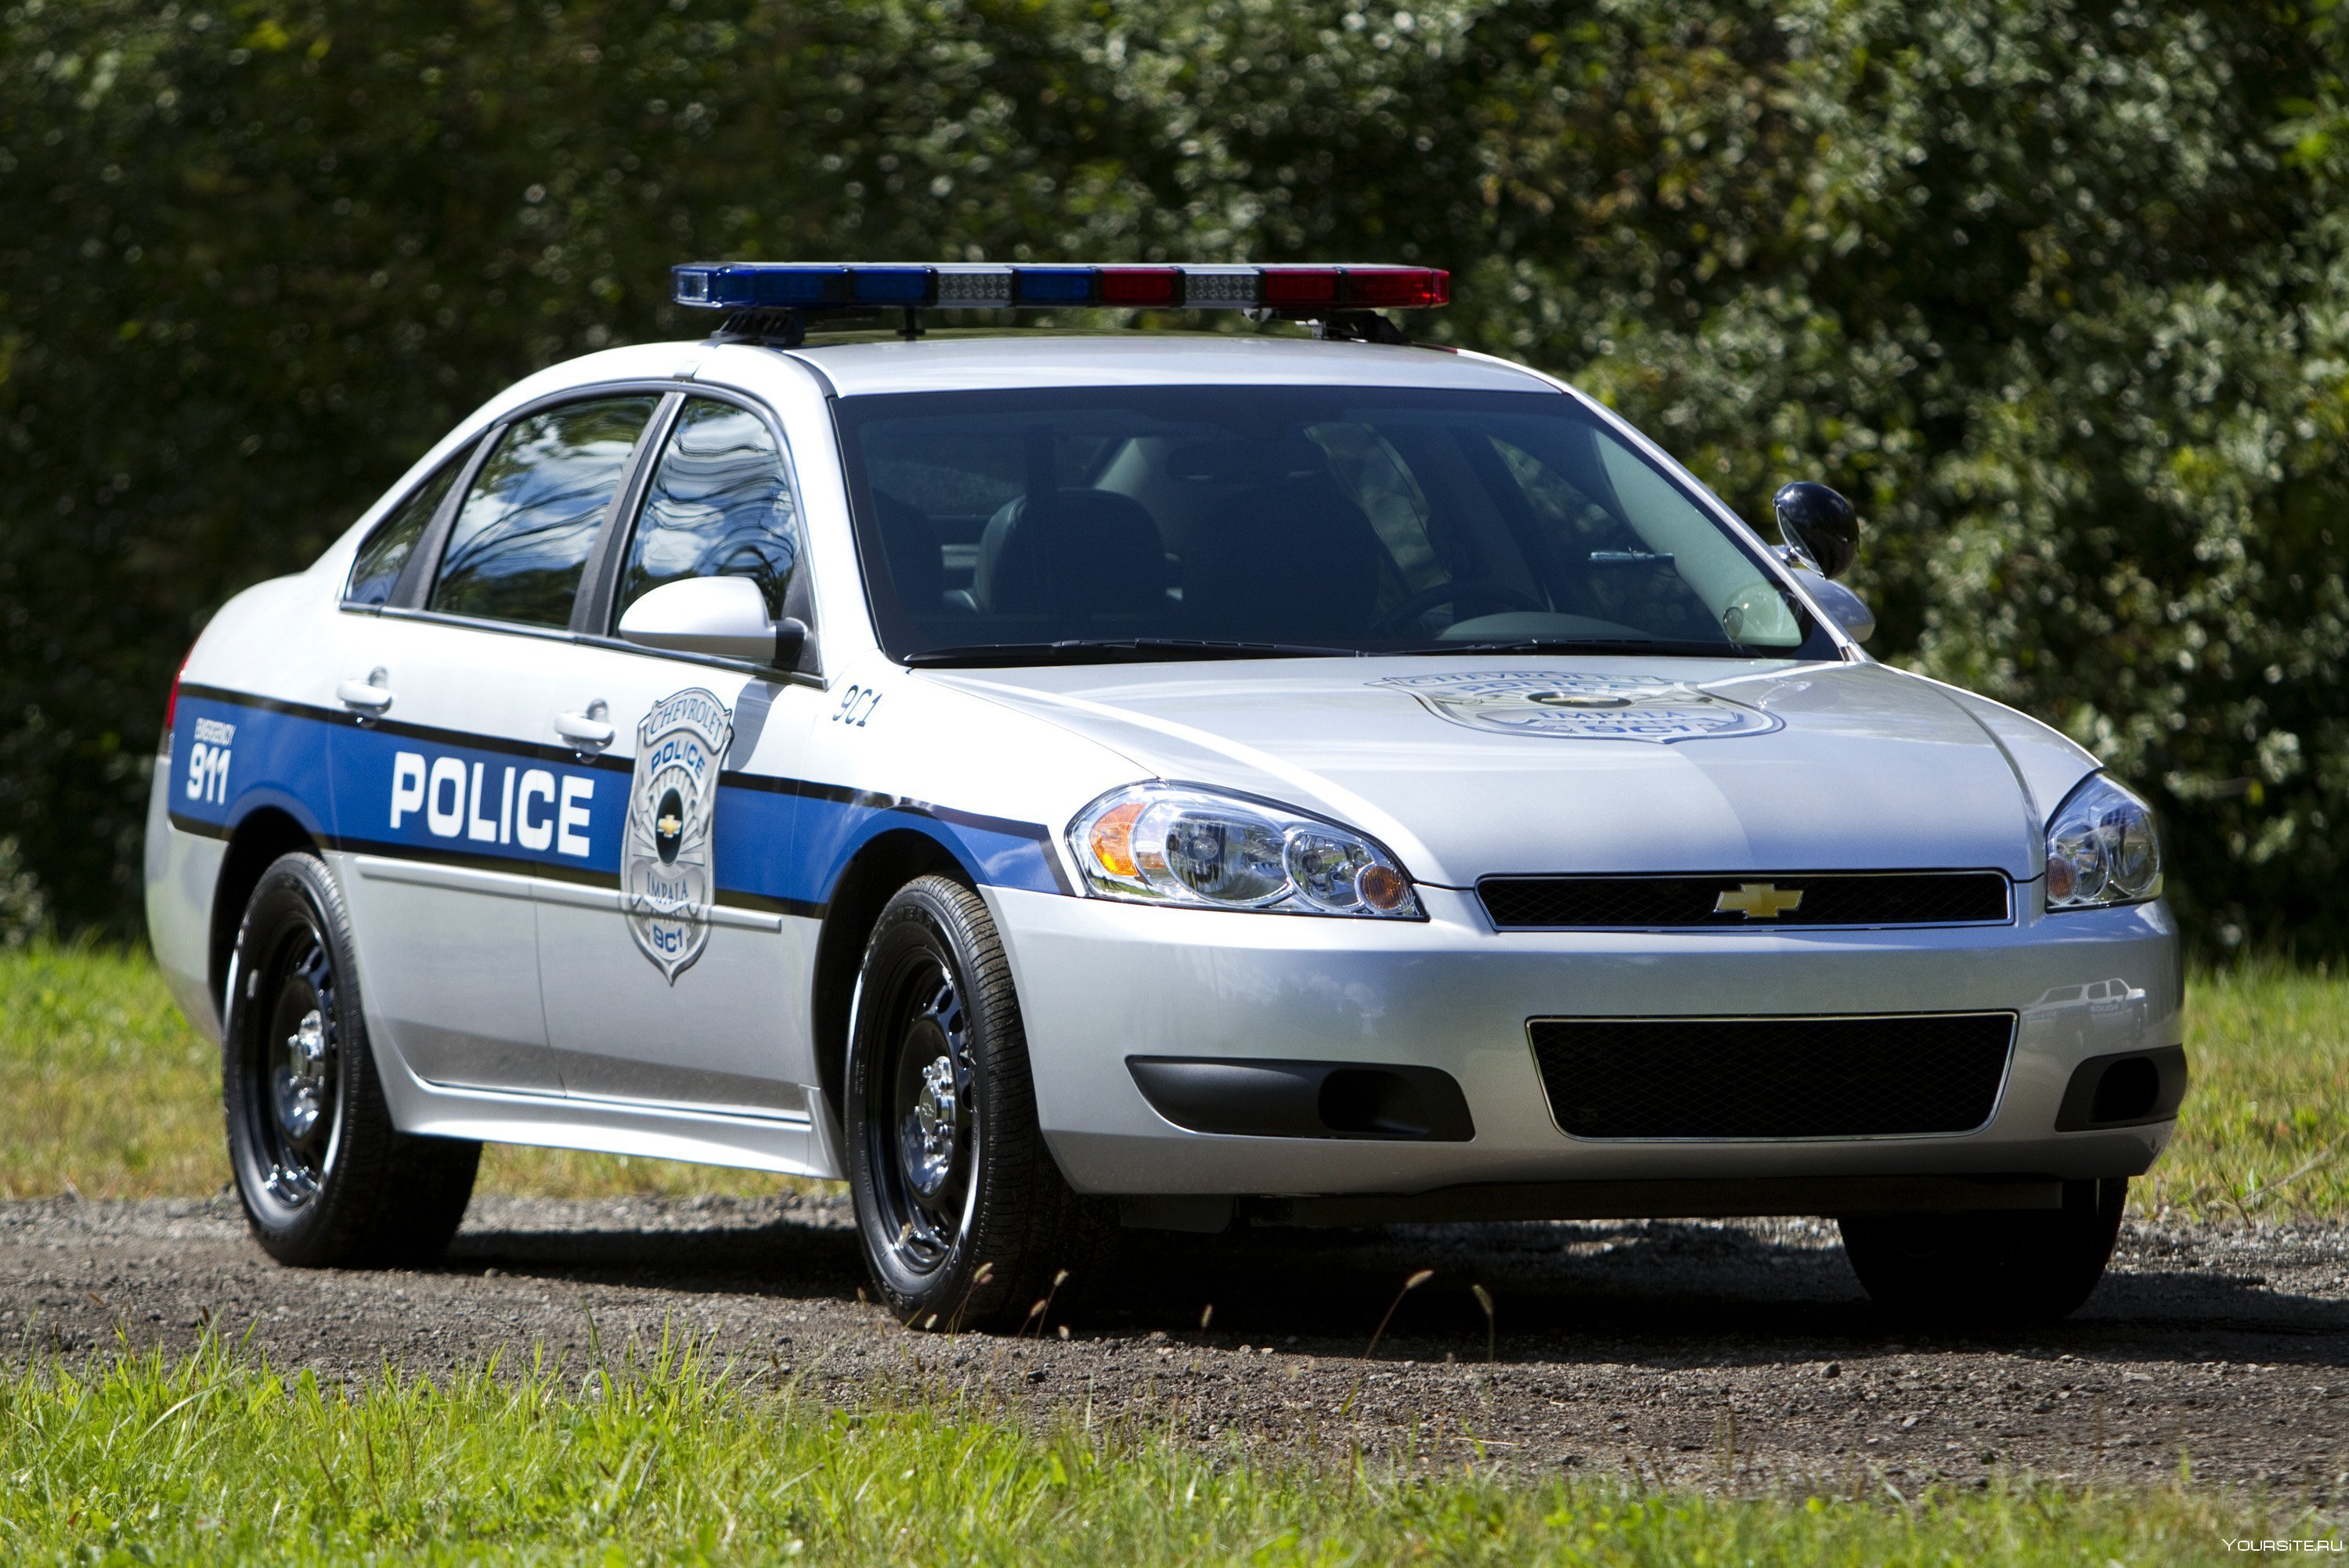 Chevrolet Impala 2000 Police. 2010 Chevrolet Impala Police. Chevrolet Impala 2000 полиция. Chevrolet Caprice 2015 Police. Полицейская машина автомобиля